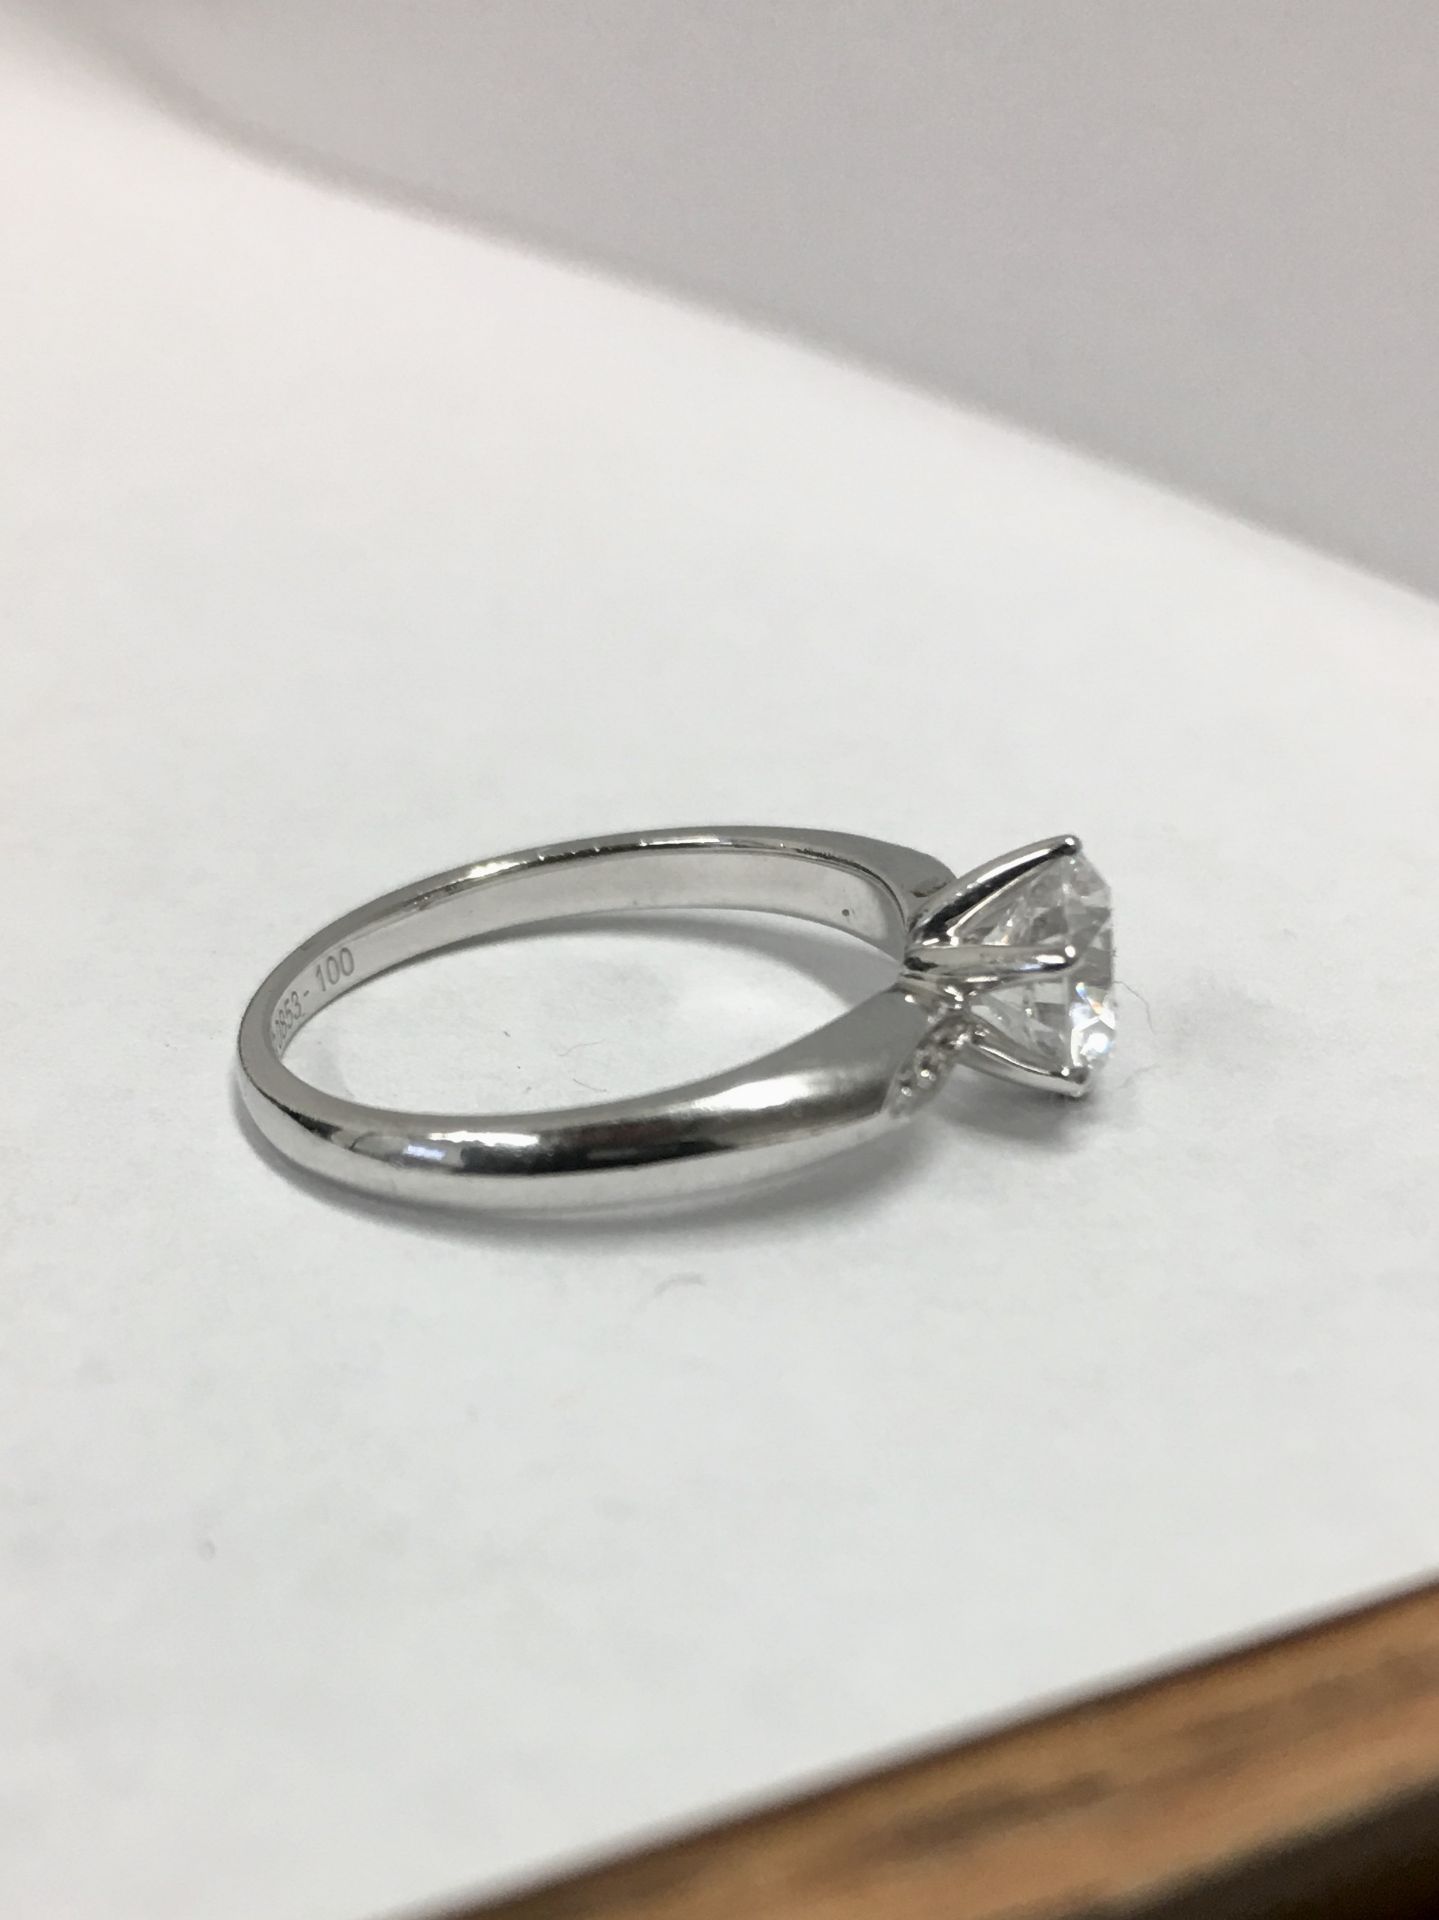 Platinum diamond solitaire ring,0.50ct brilliant cut diamond h colour vs clarity(clarity enhanced), - Bild 2 aus 4